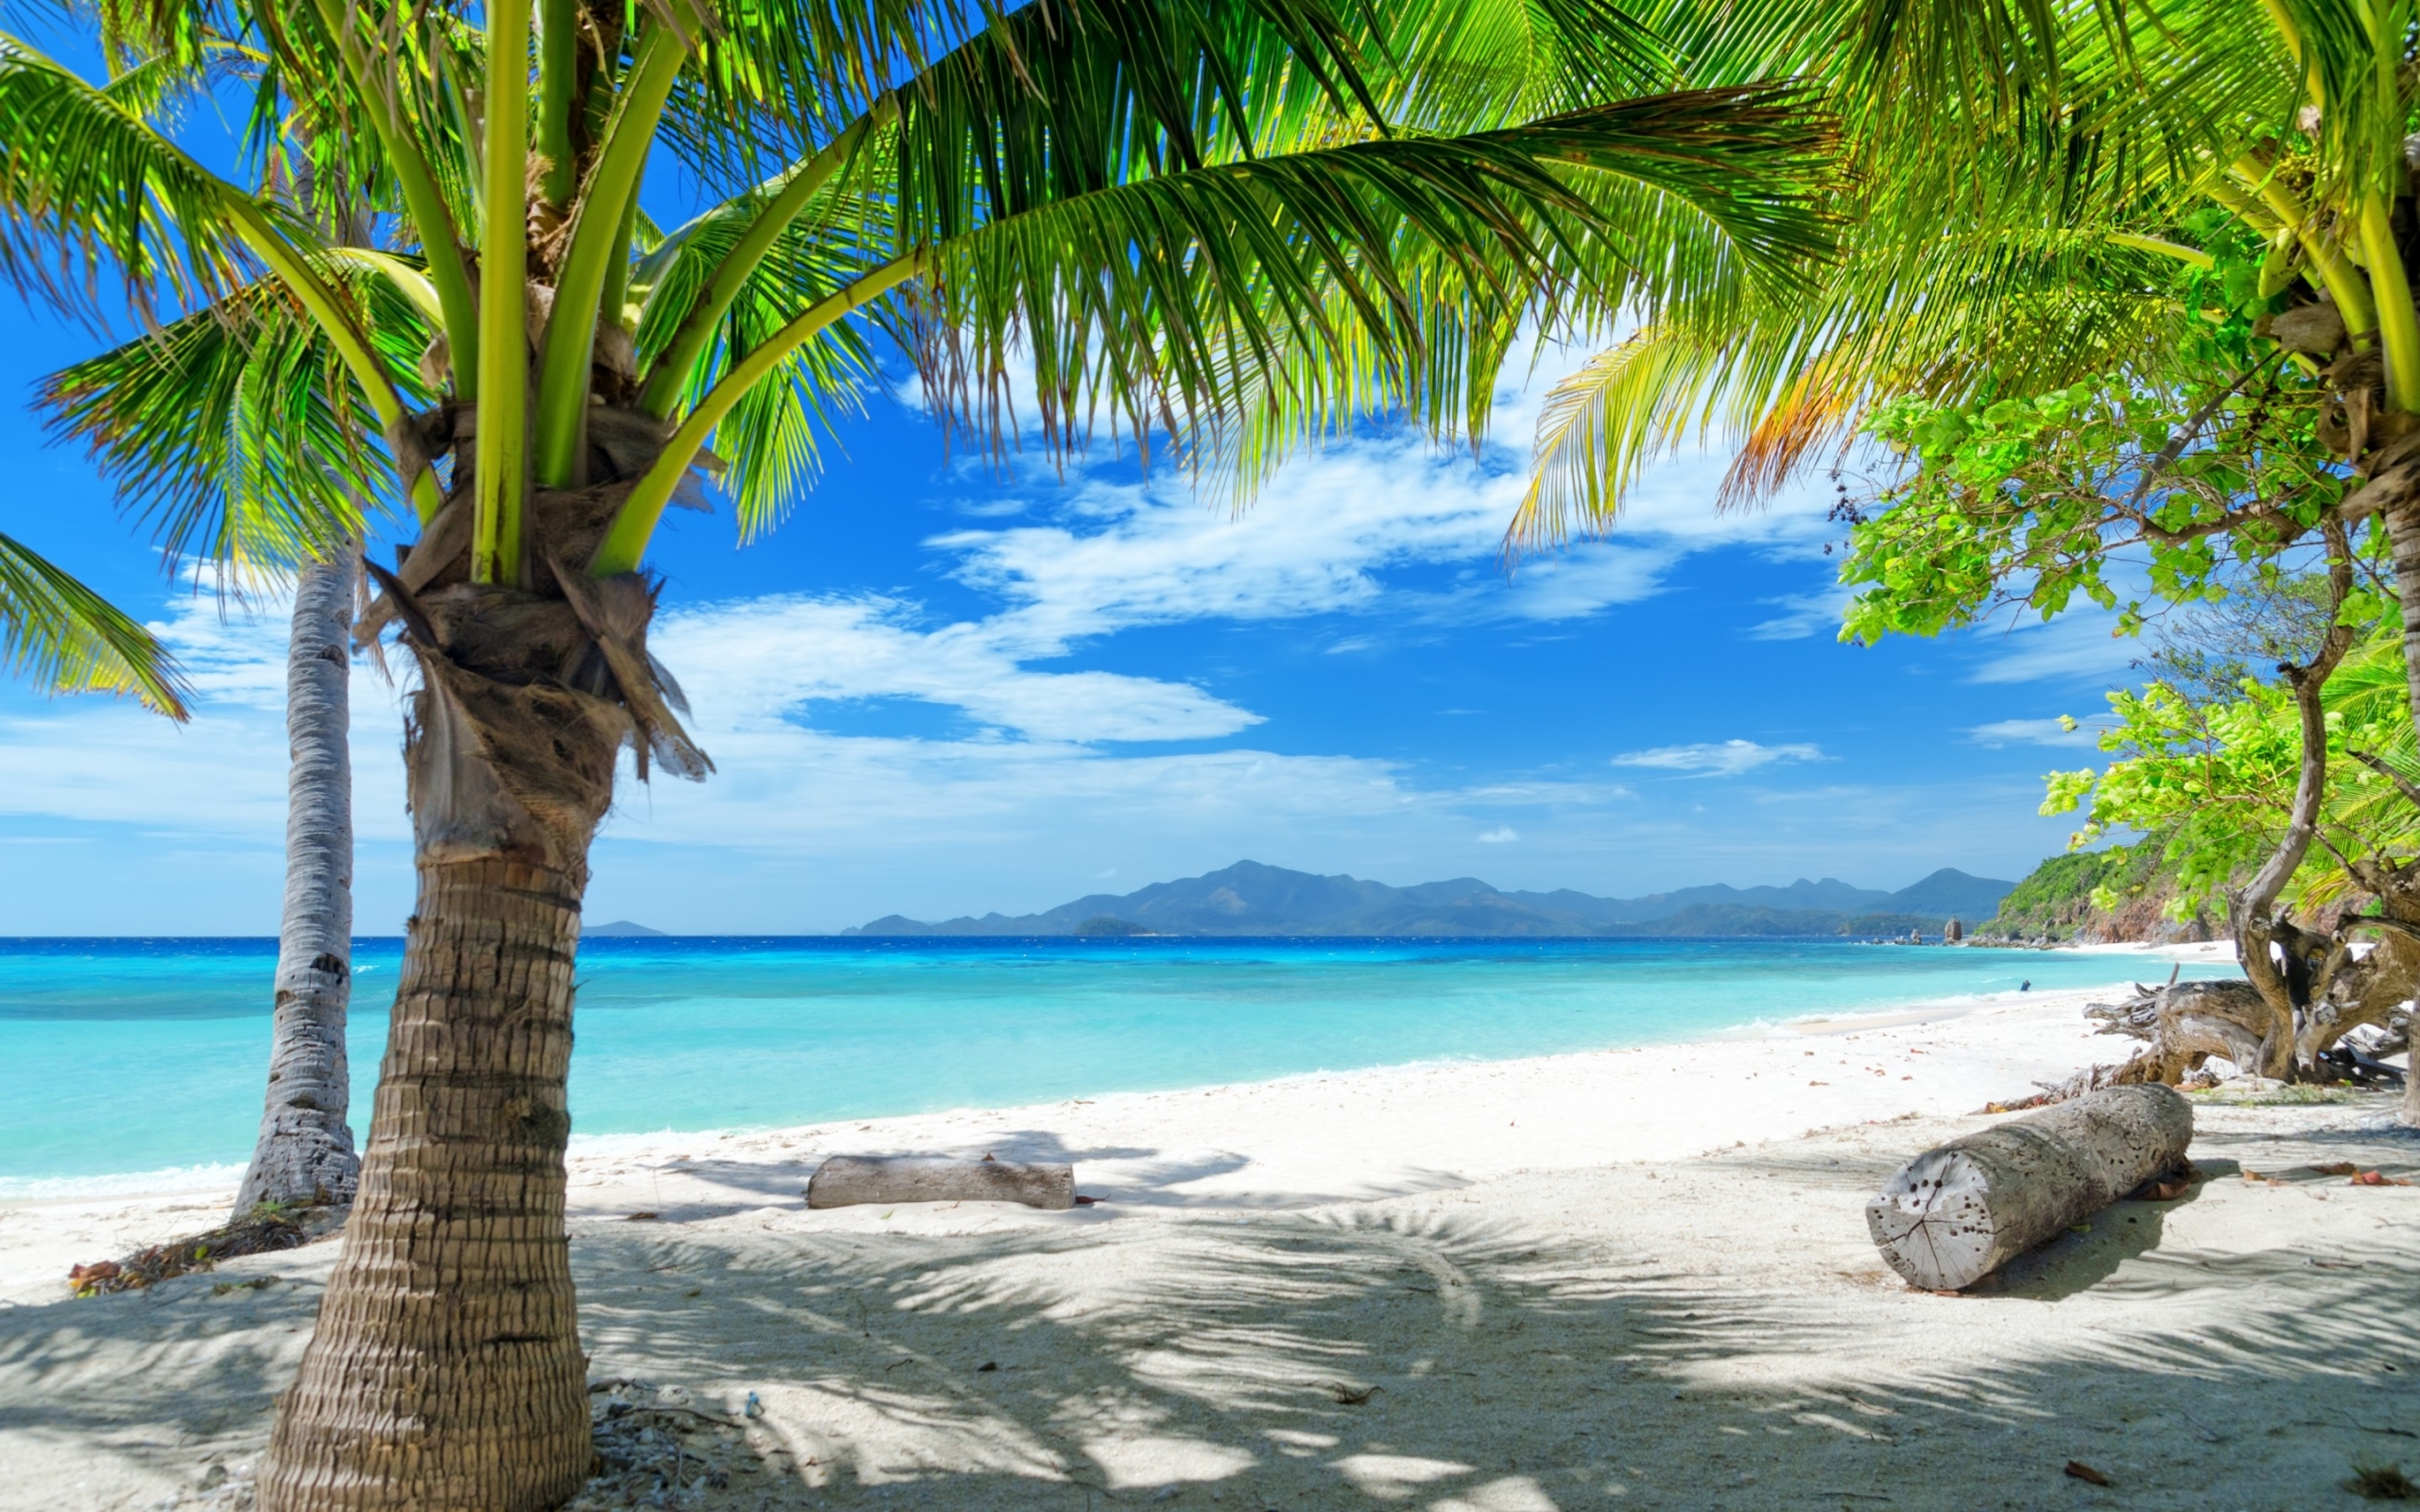  comtempting ocean beach with palm trees hd desktop wallpaperhtml